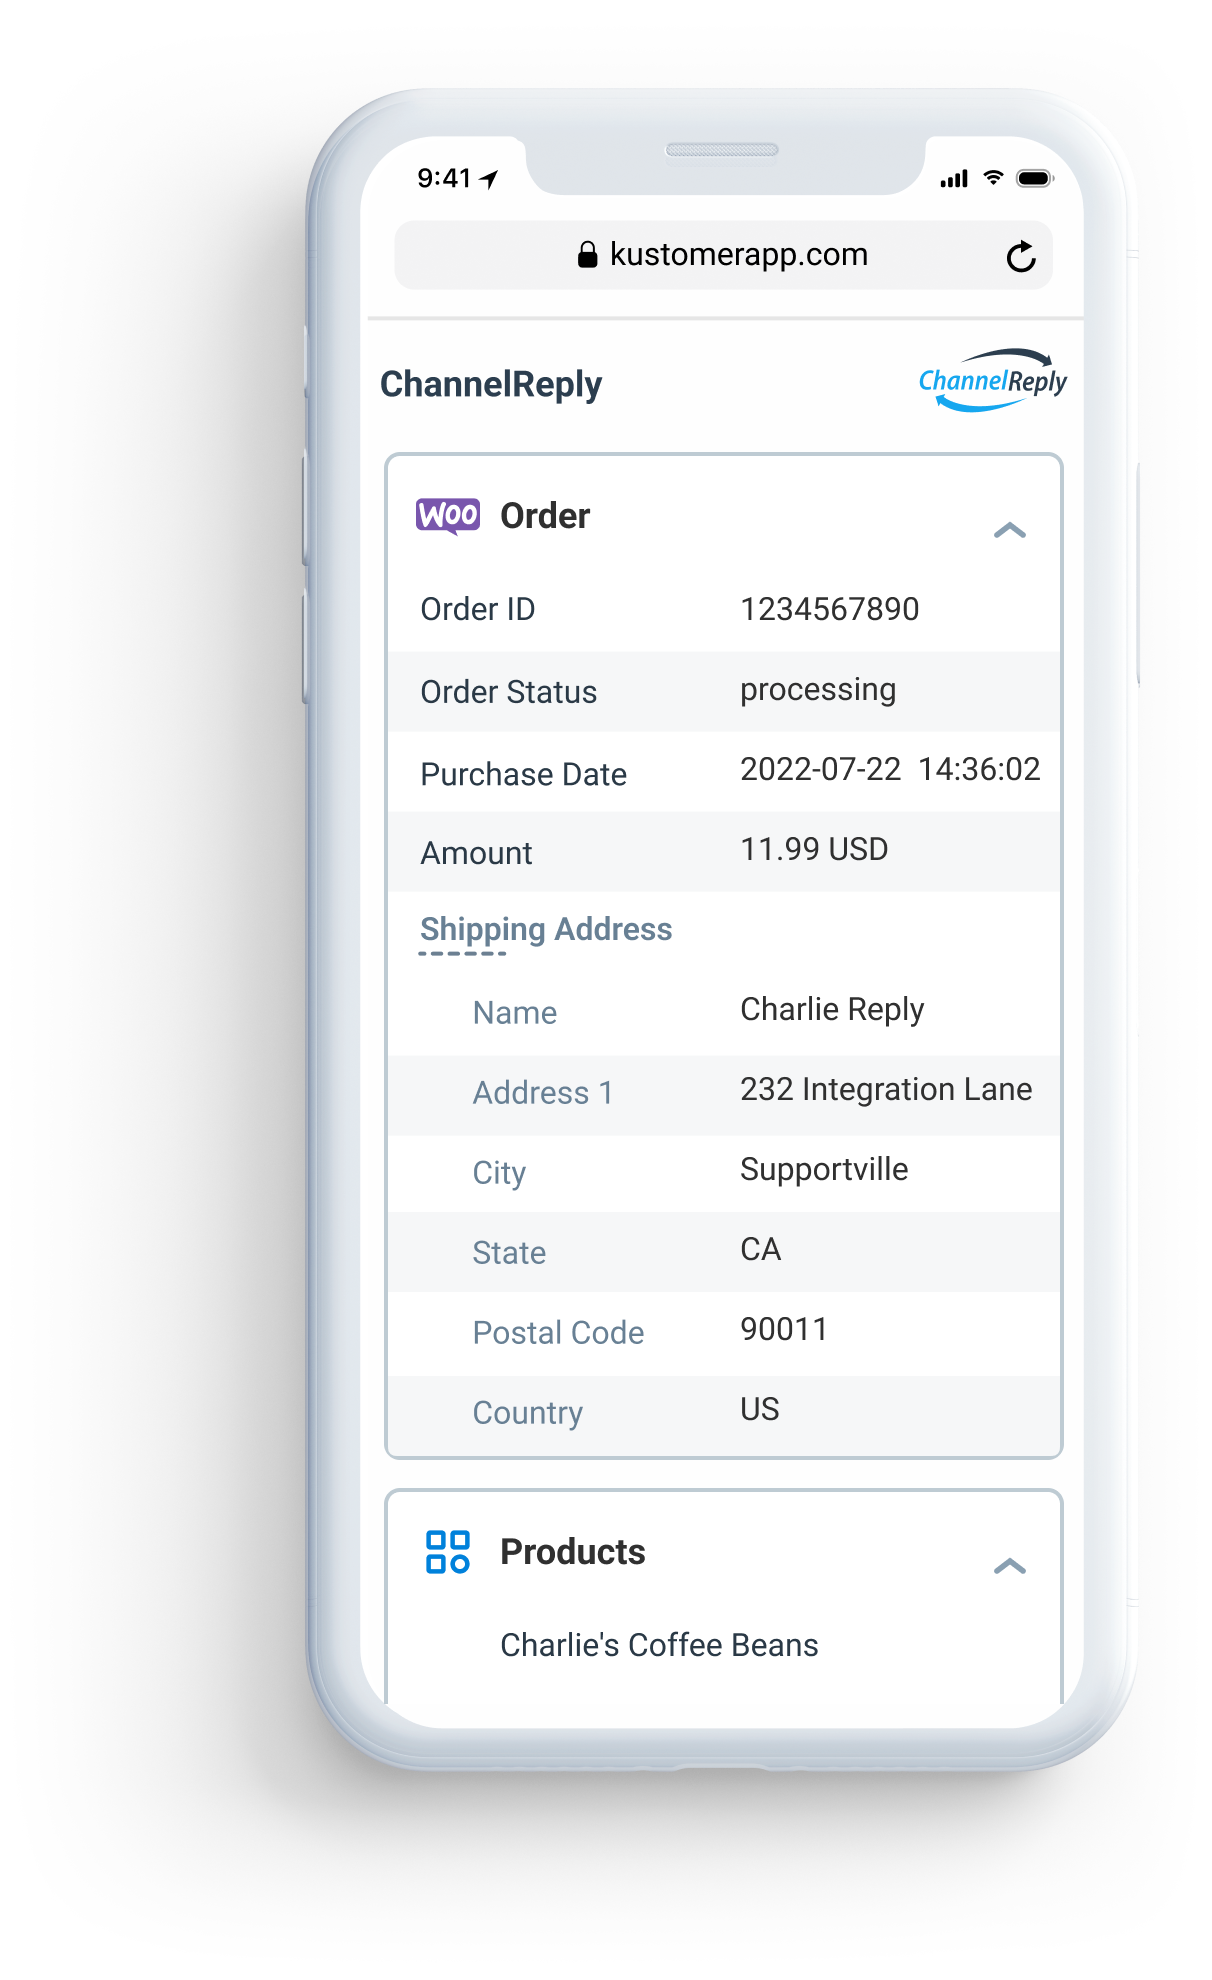 Illustration of WooCommerce order data in Kustomer’s mobile interface